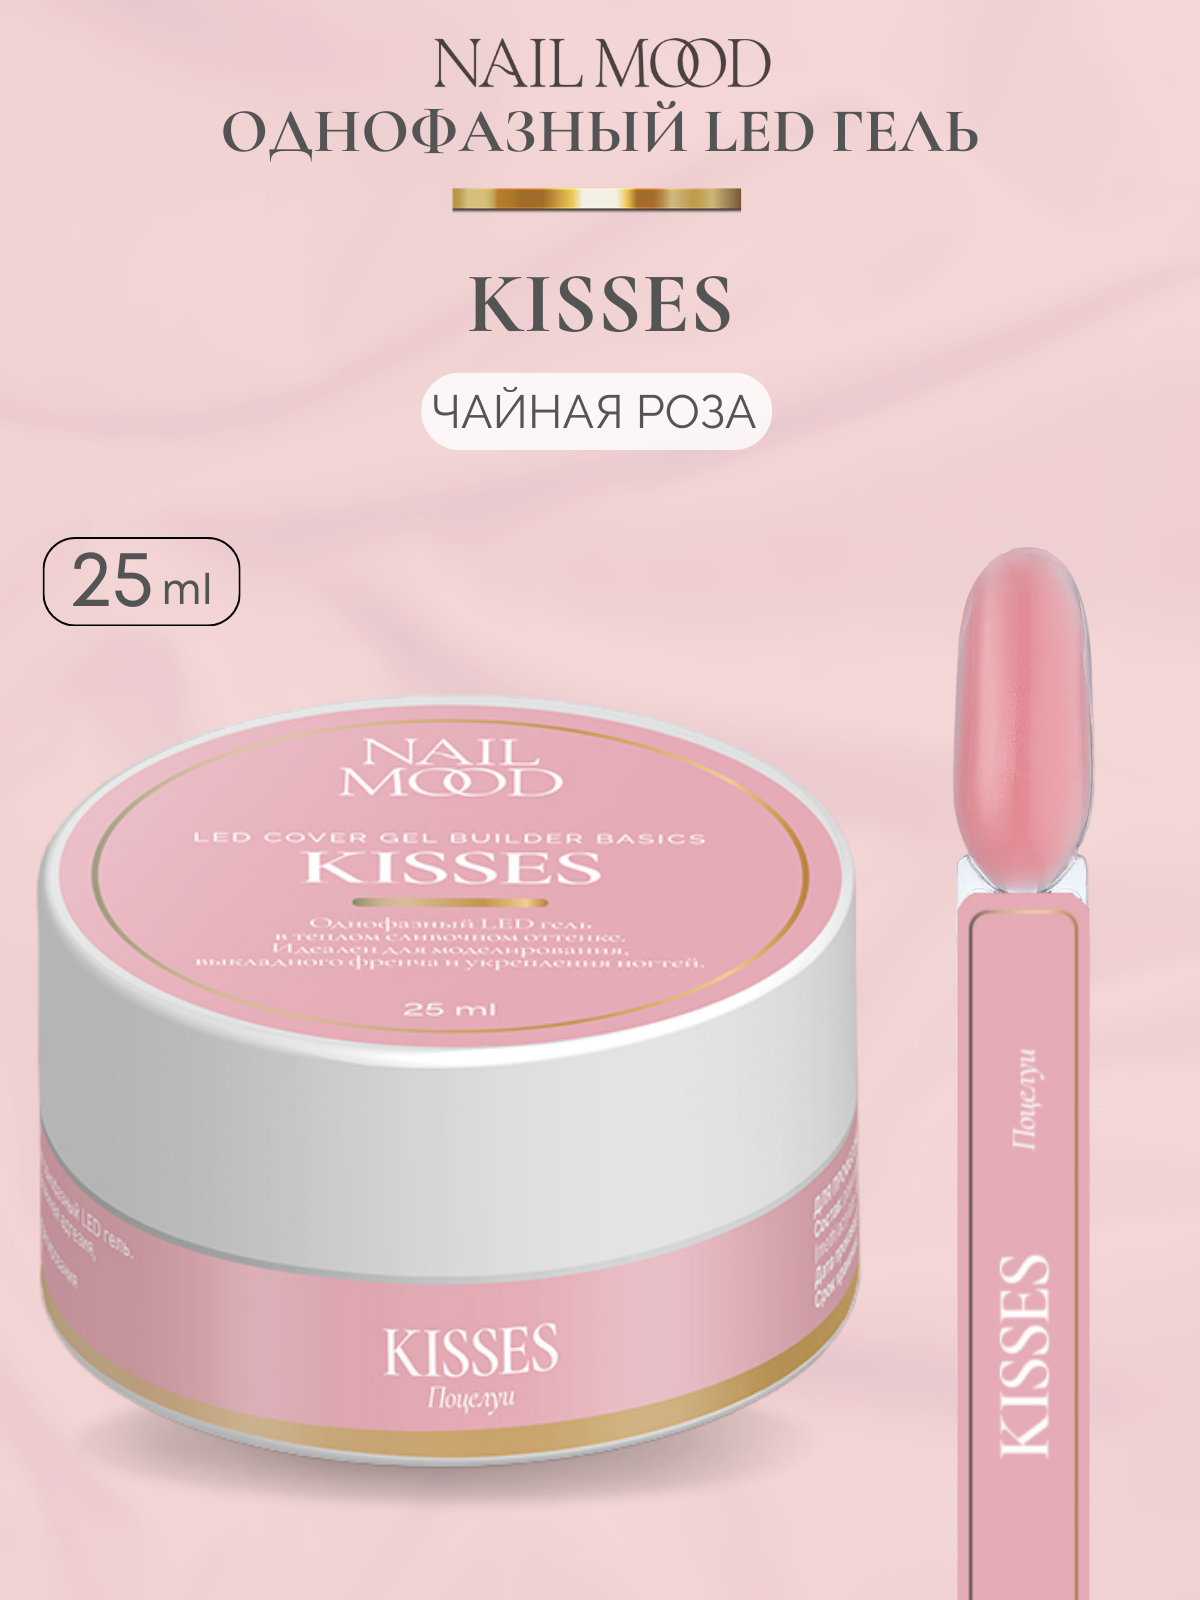 Гель для моделирования Nail Mood Поцелуи Kisses 25 г скребок для языка dentalpik tongue cleaner 2 шт розовый и зеленый